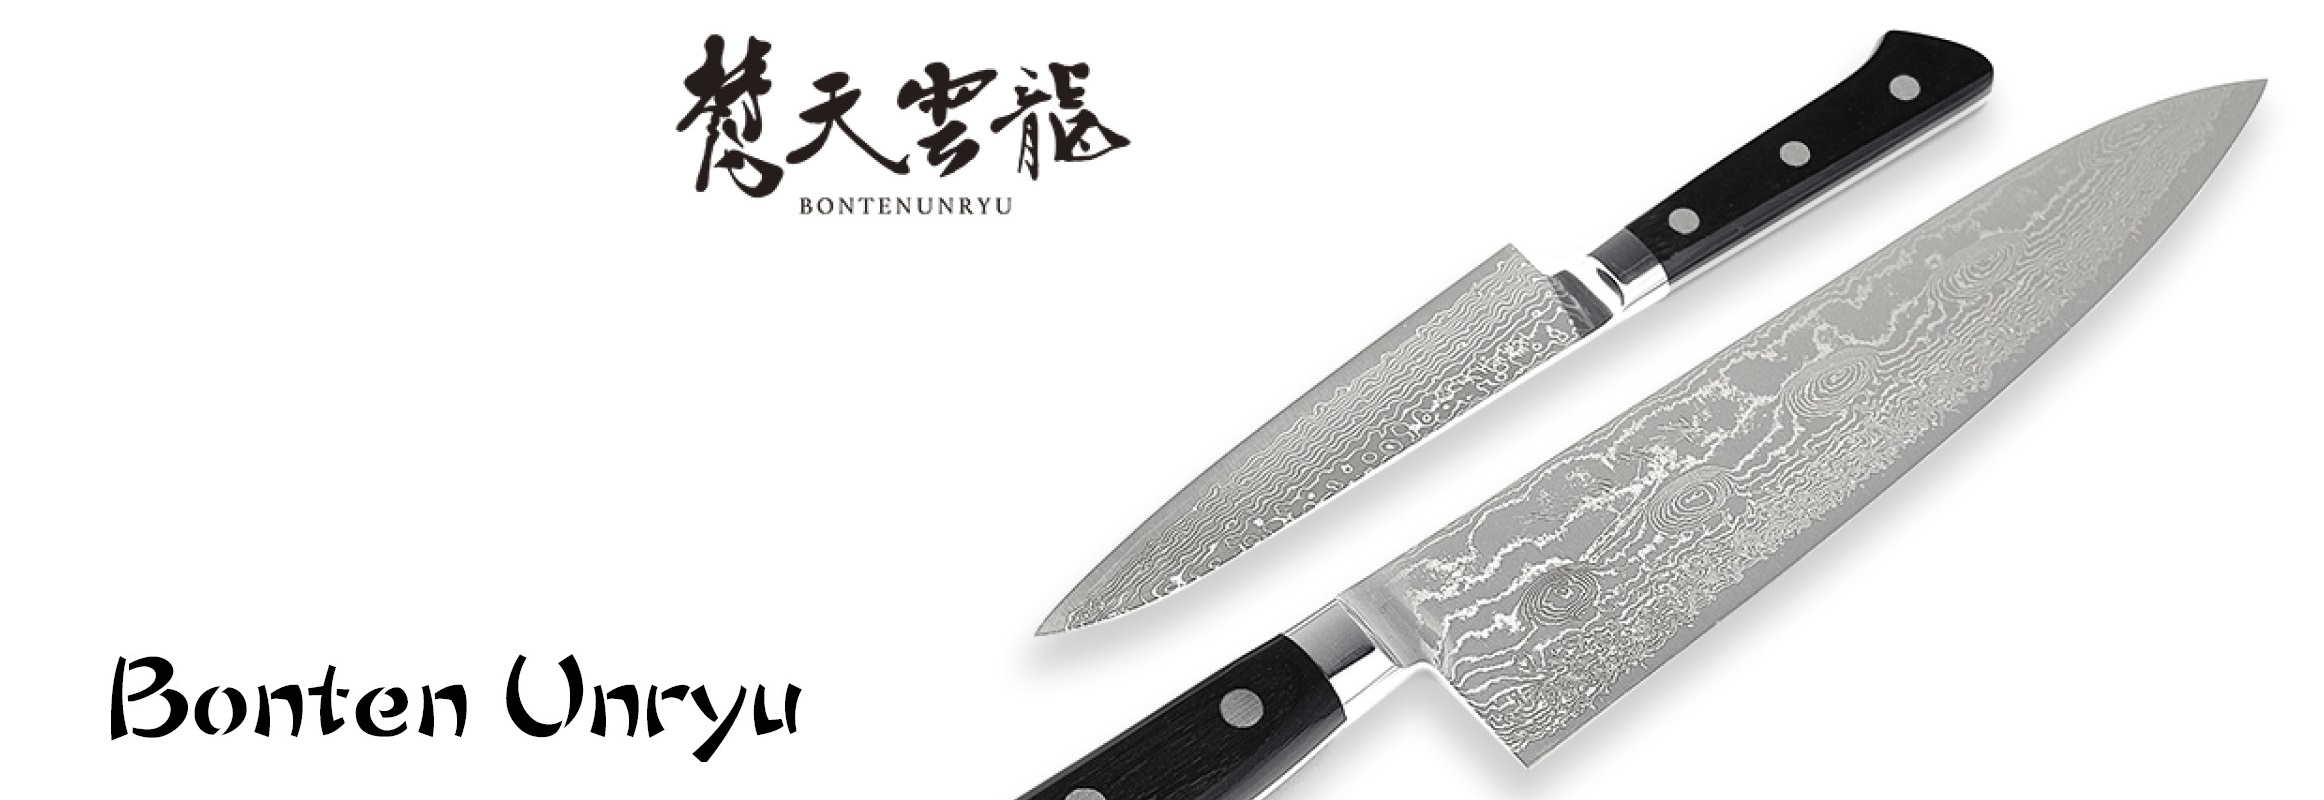 couteaux japonais ryusen bonten unryu